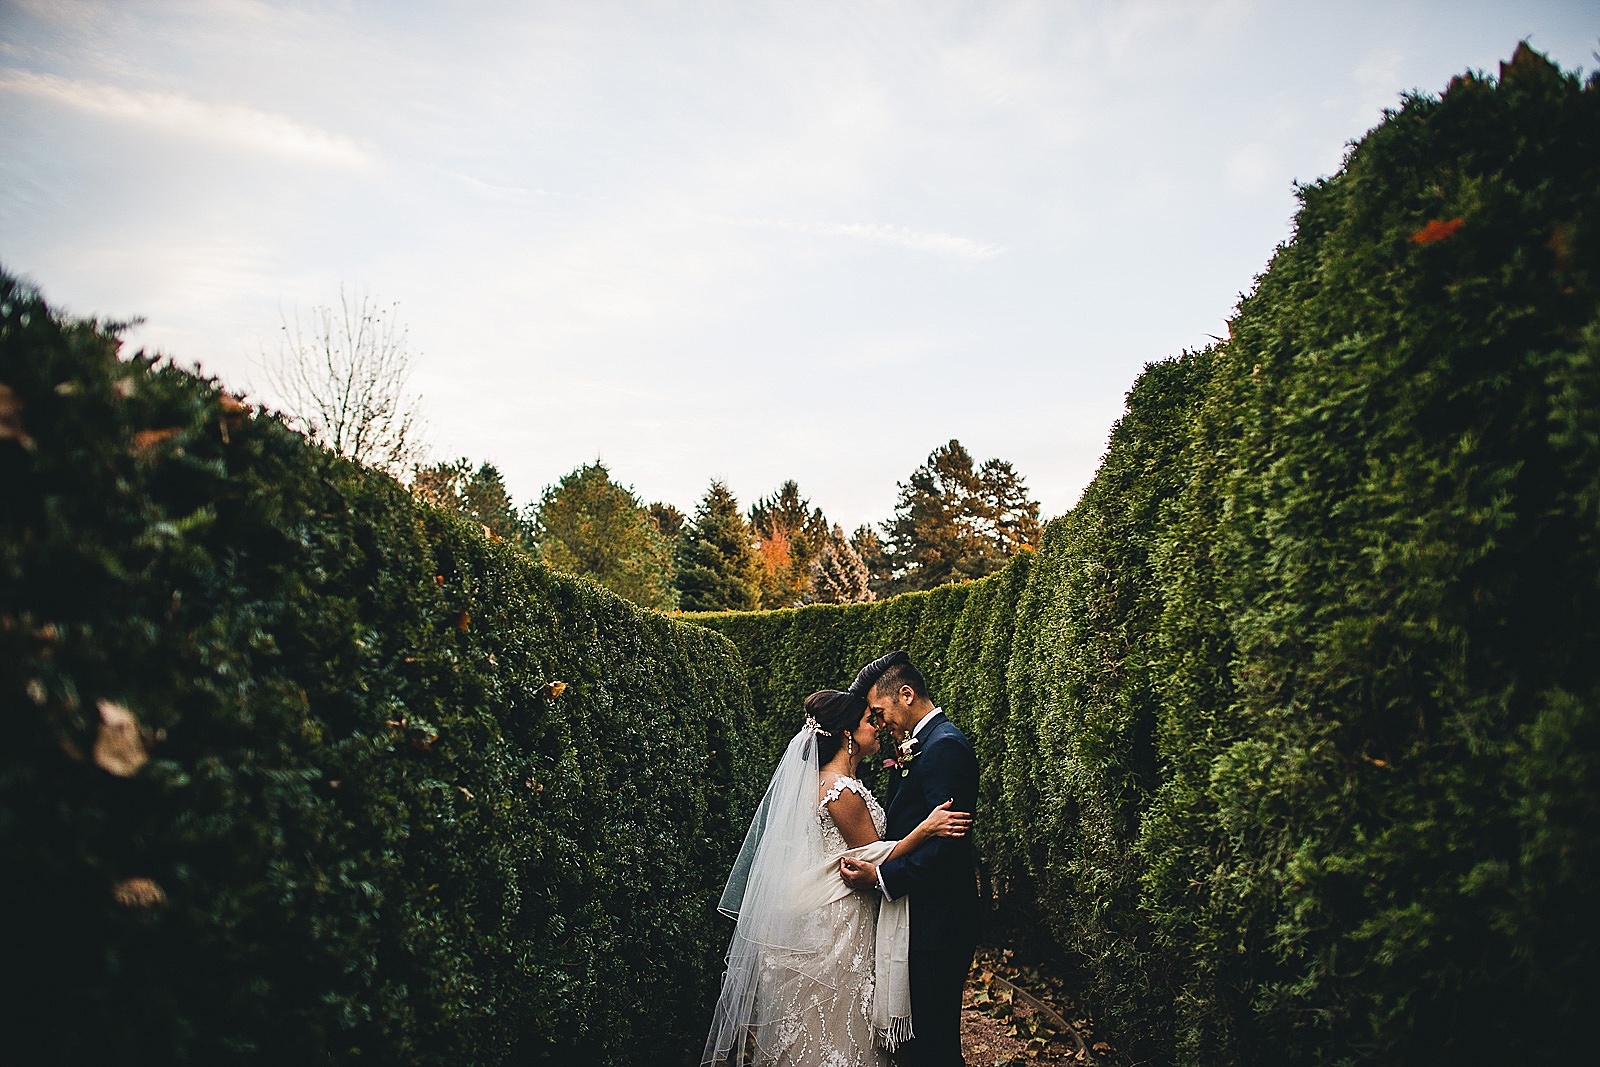 17 wedding photos at morton arboretum - Chicago Wedding Photography at Morton Arboretum // Alex + Tim